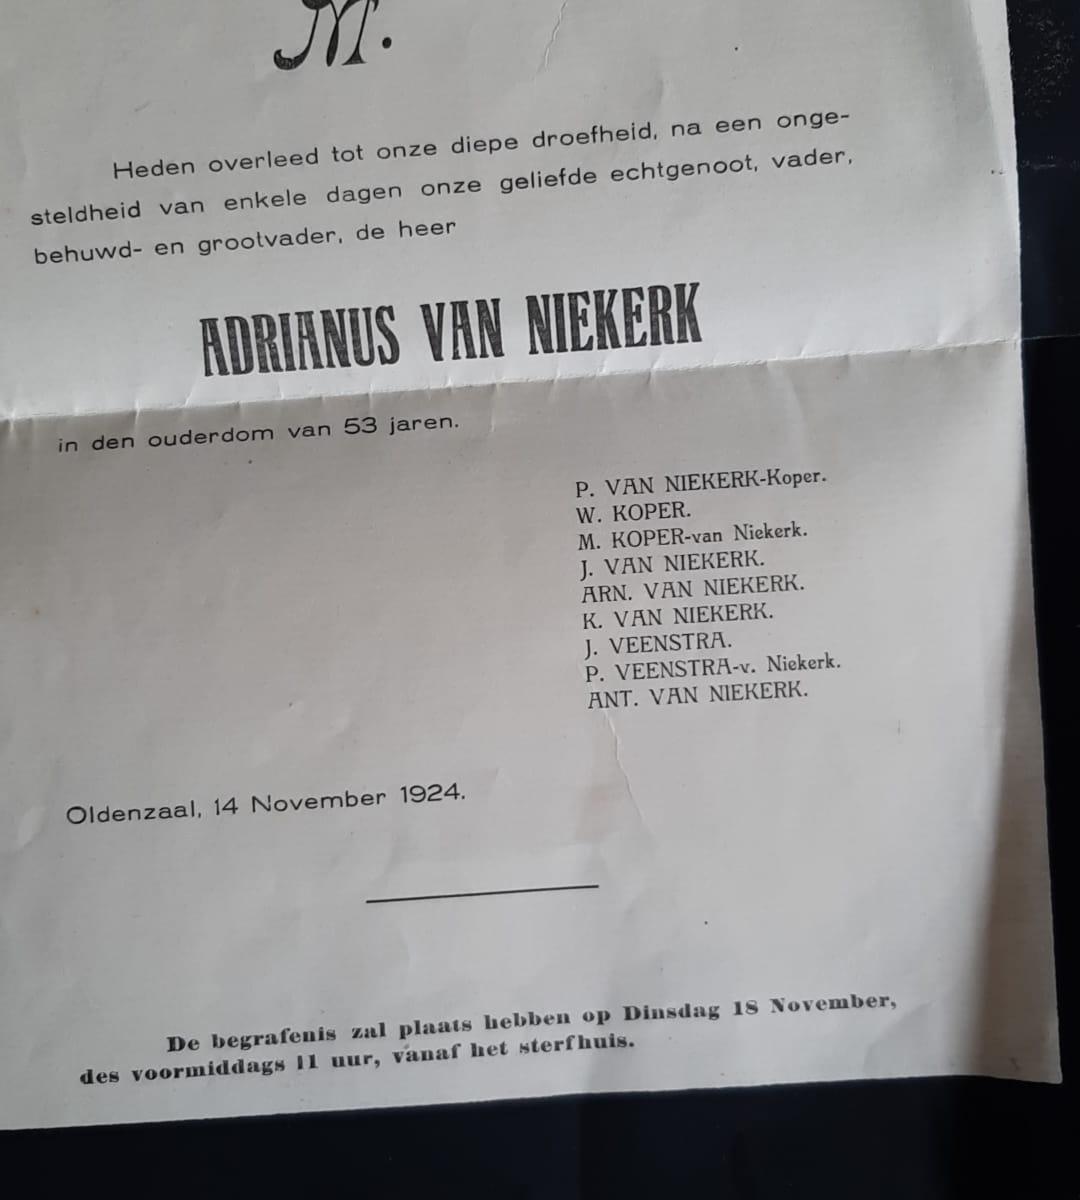 Rouwkaart for Adrianus van Niekerk, November 1924 (inside)